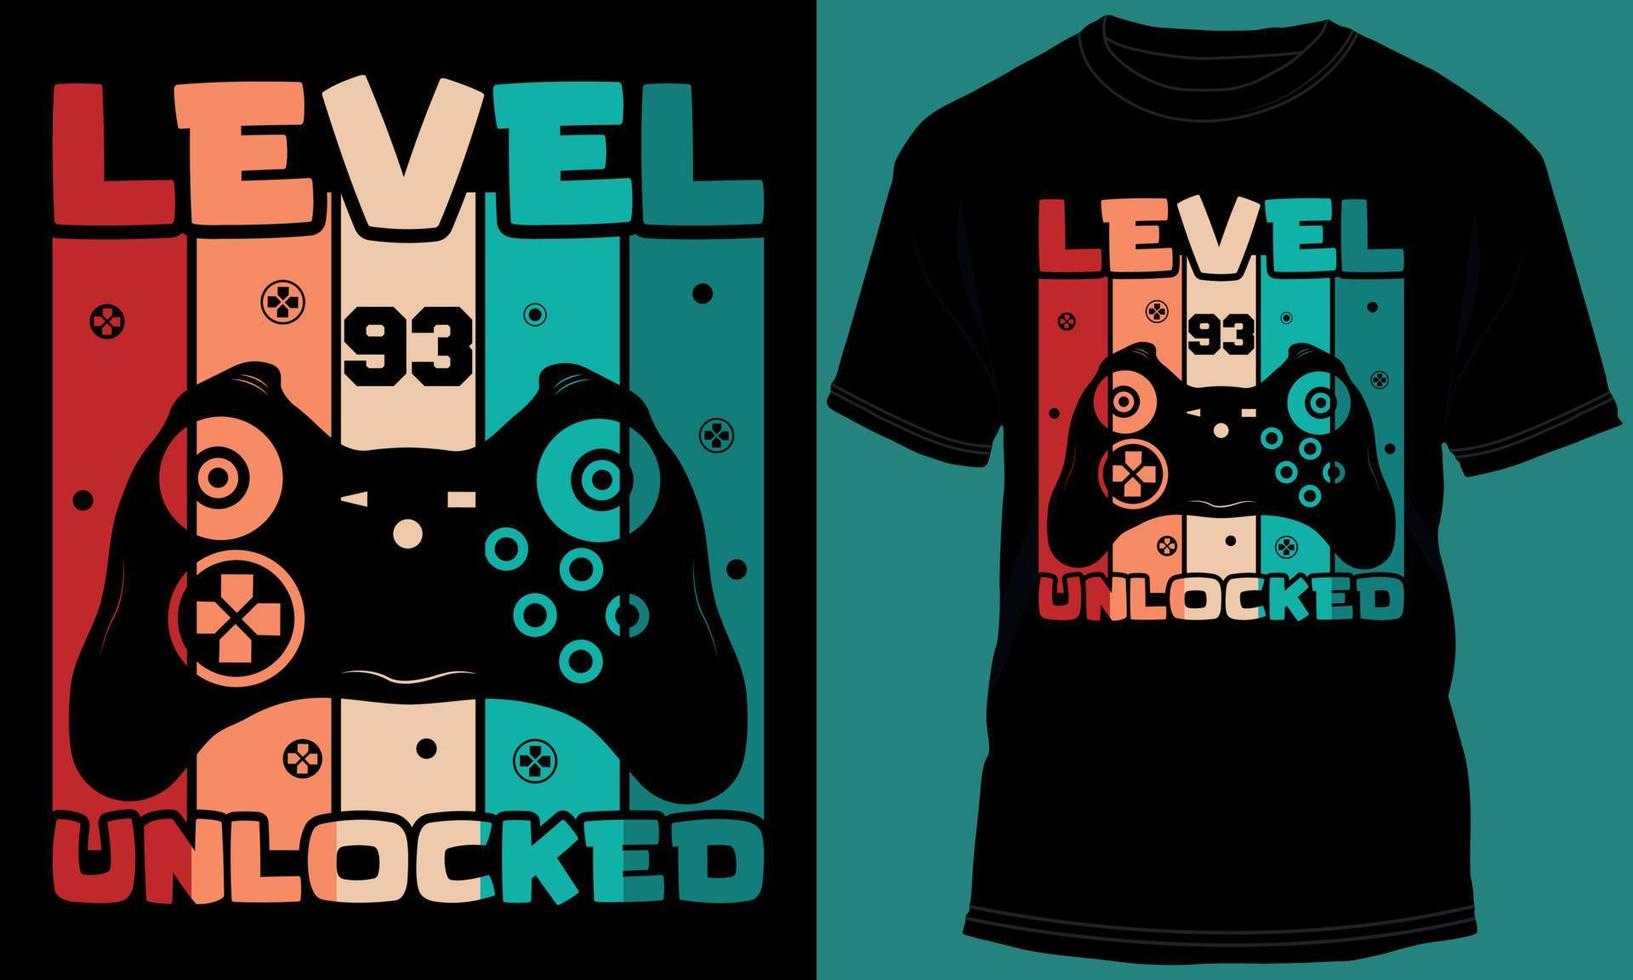 jogador ou jogos nível 93 desbloqueado camiseta Projeto vetor